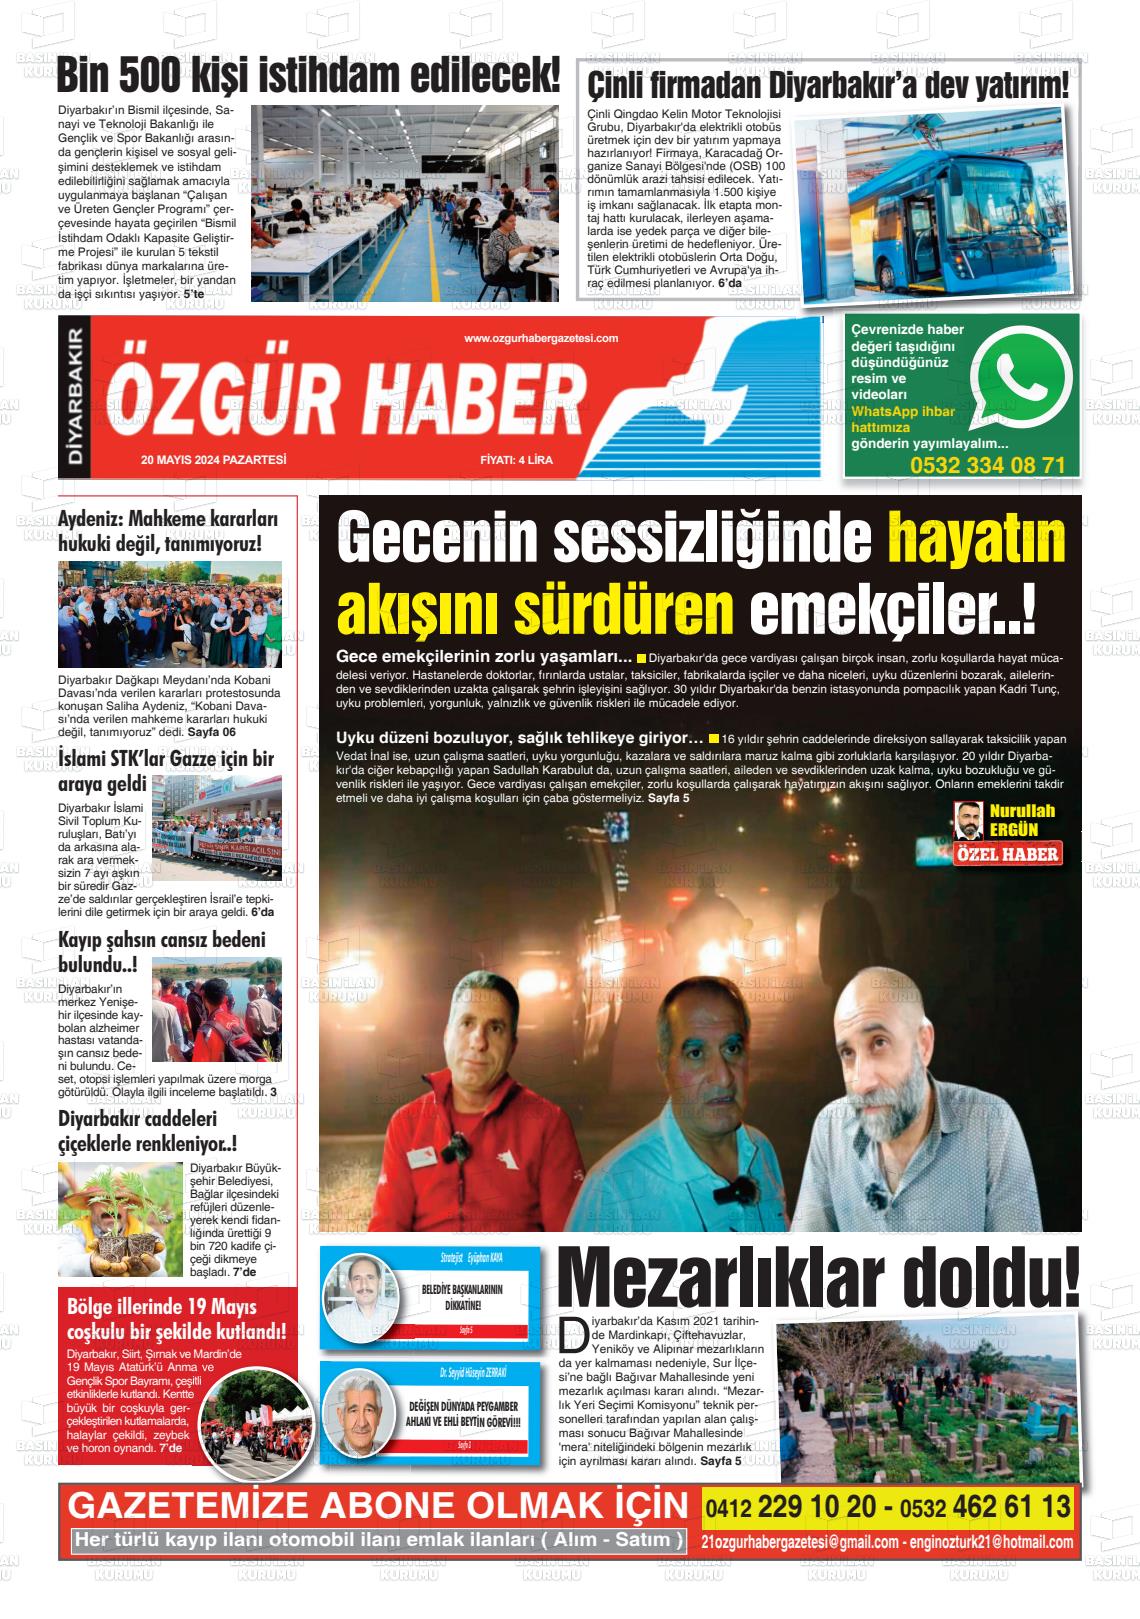 DİYARBAKIR ÖZGÜR HABER Gazetesi